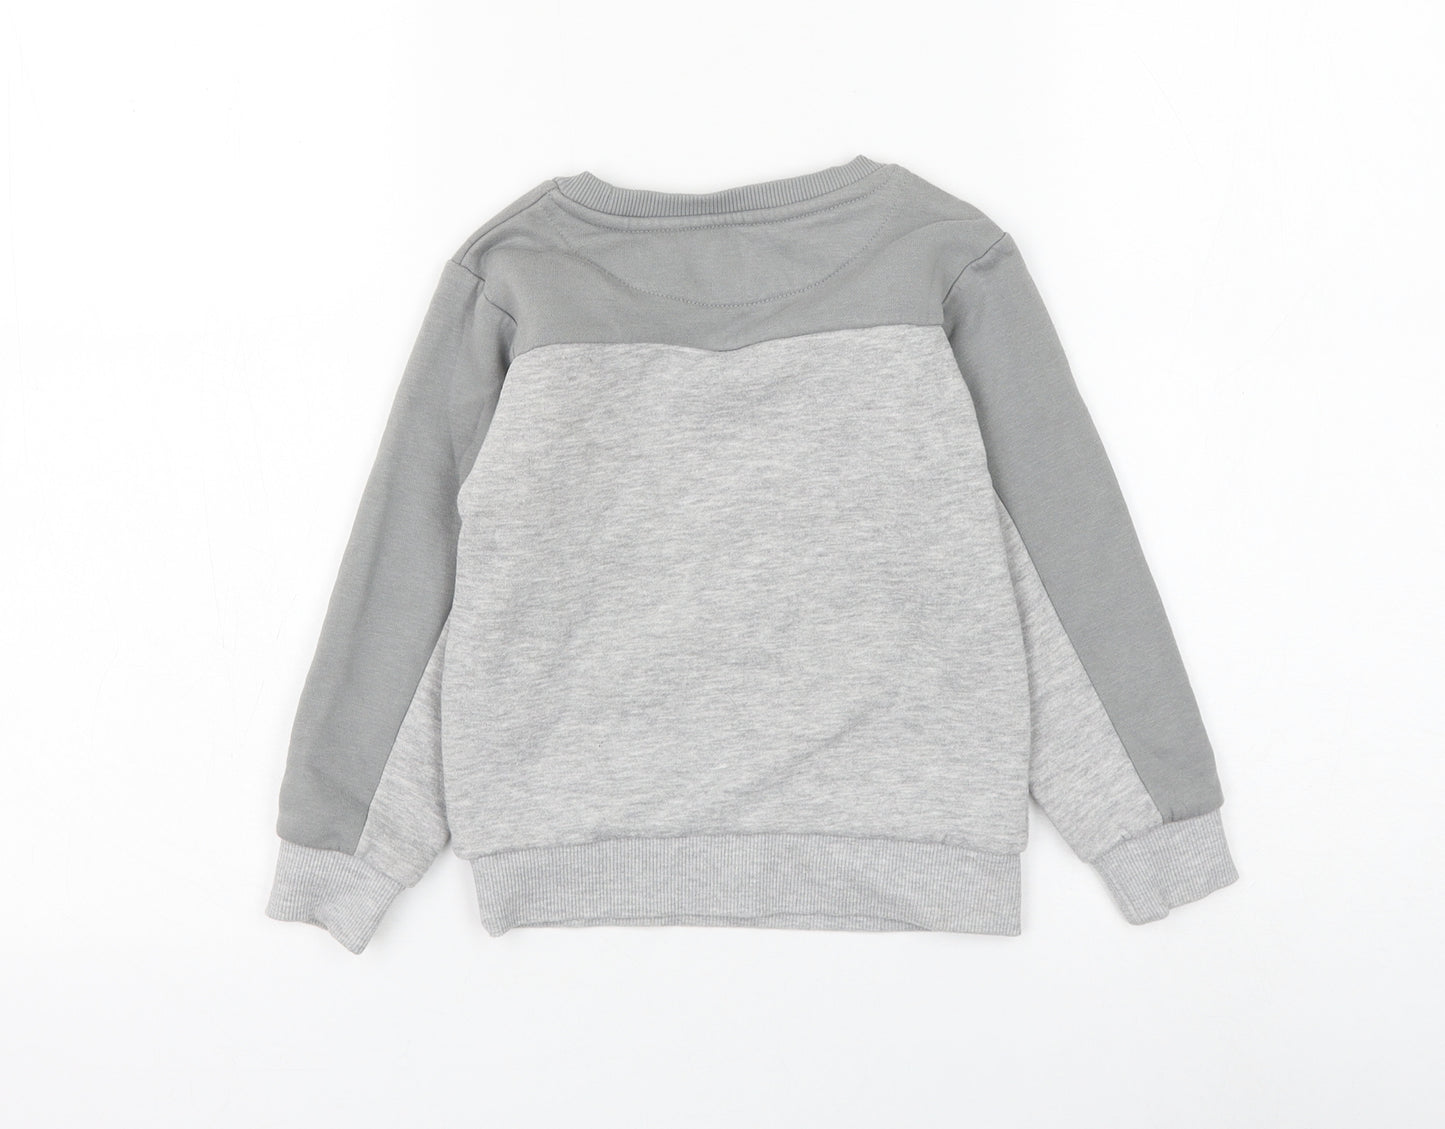 McKenzie Boys Grey Cotton Pullover Sweatshirt Size 4-5 Years Pullover